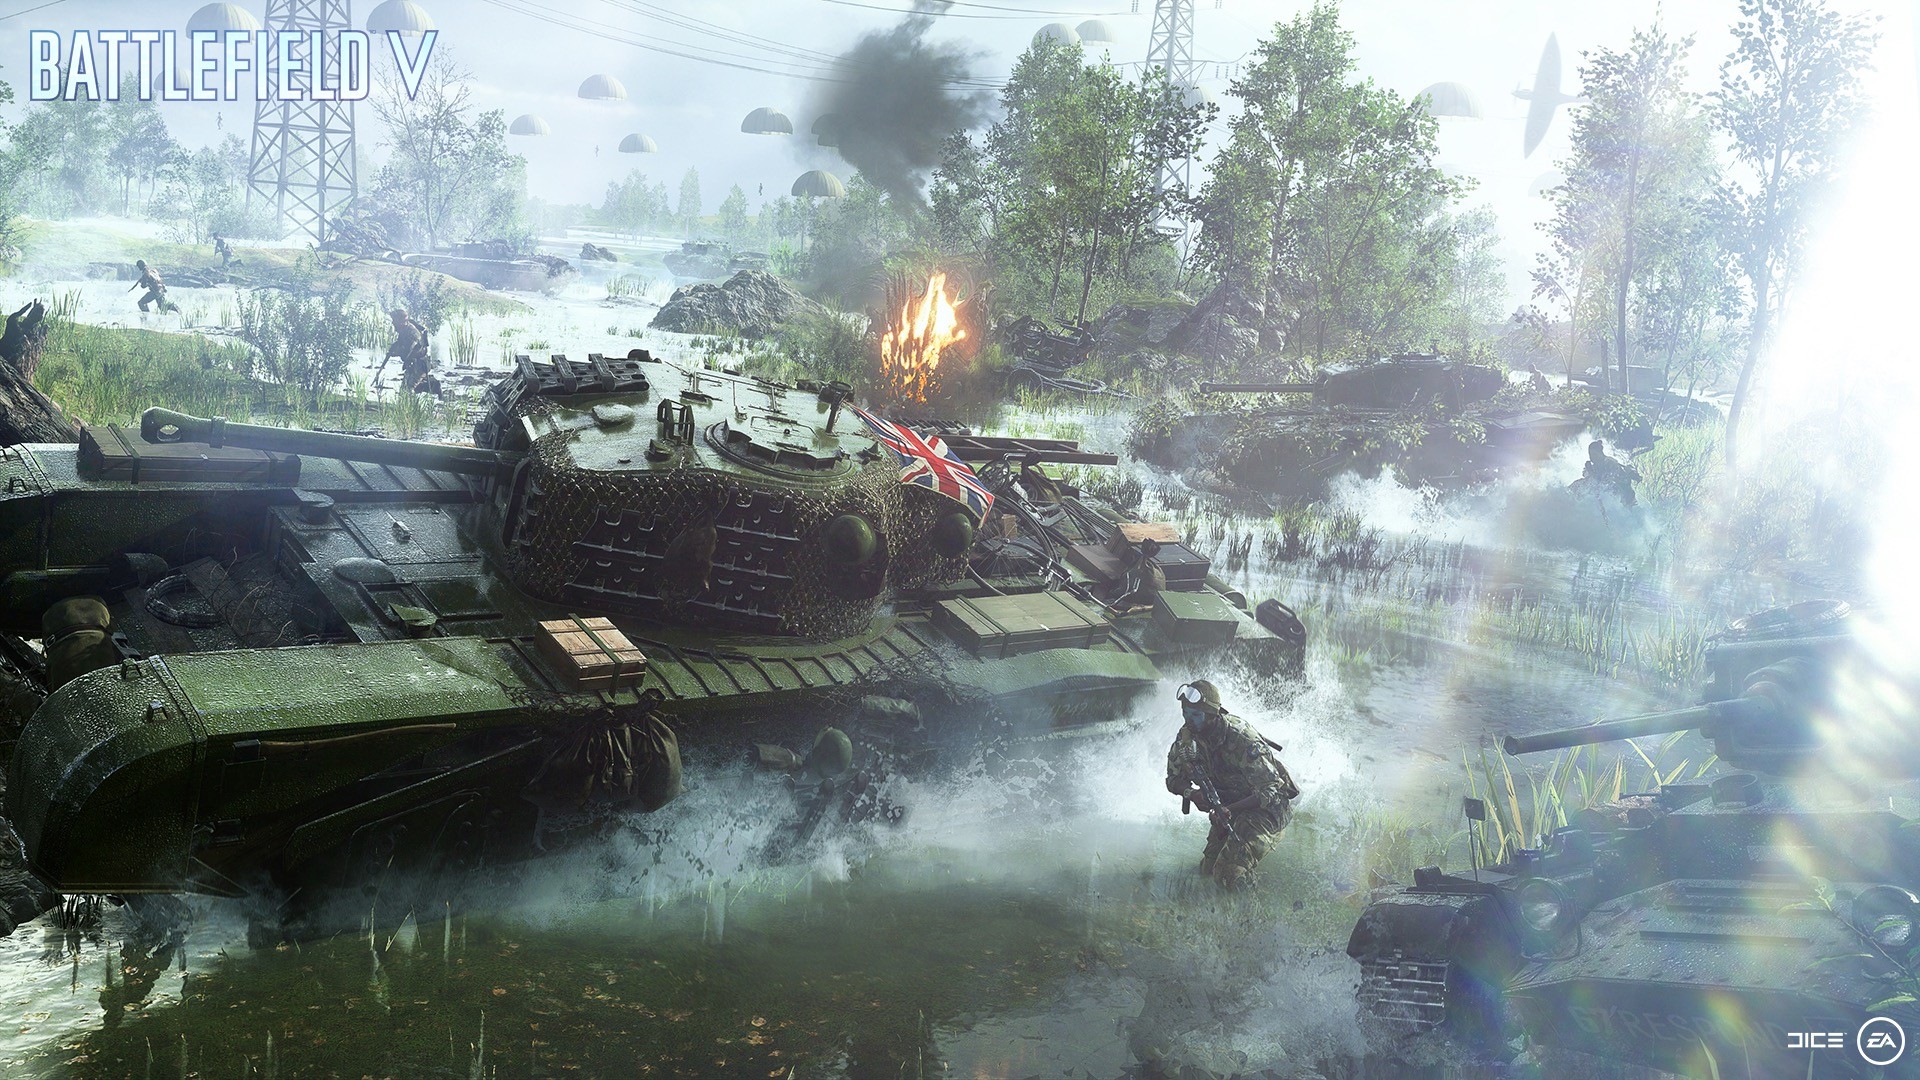 Battle Royale de Battlefield 5, Firestorm recebe primeiro gameplay